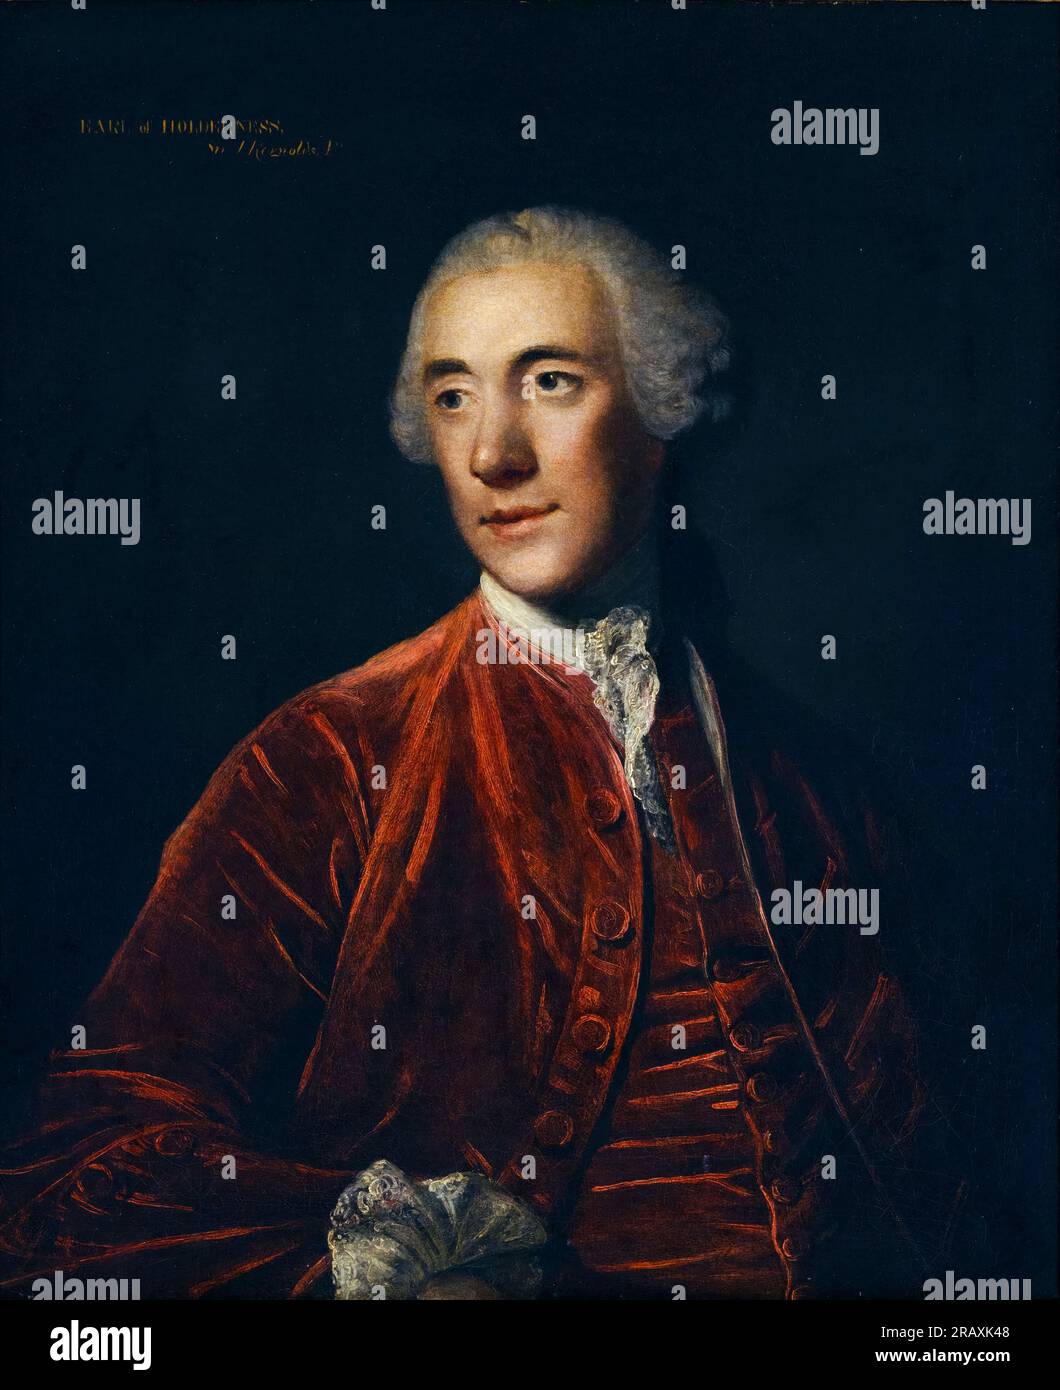 Robert Darcy, 4e comte de Holderness (1717-1778), diplomate et homme politique britannique, portrait à l'huile sur toile de Sir Joshua Reynolds, 1775 Banque D'Images